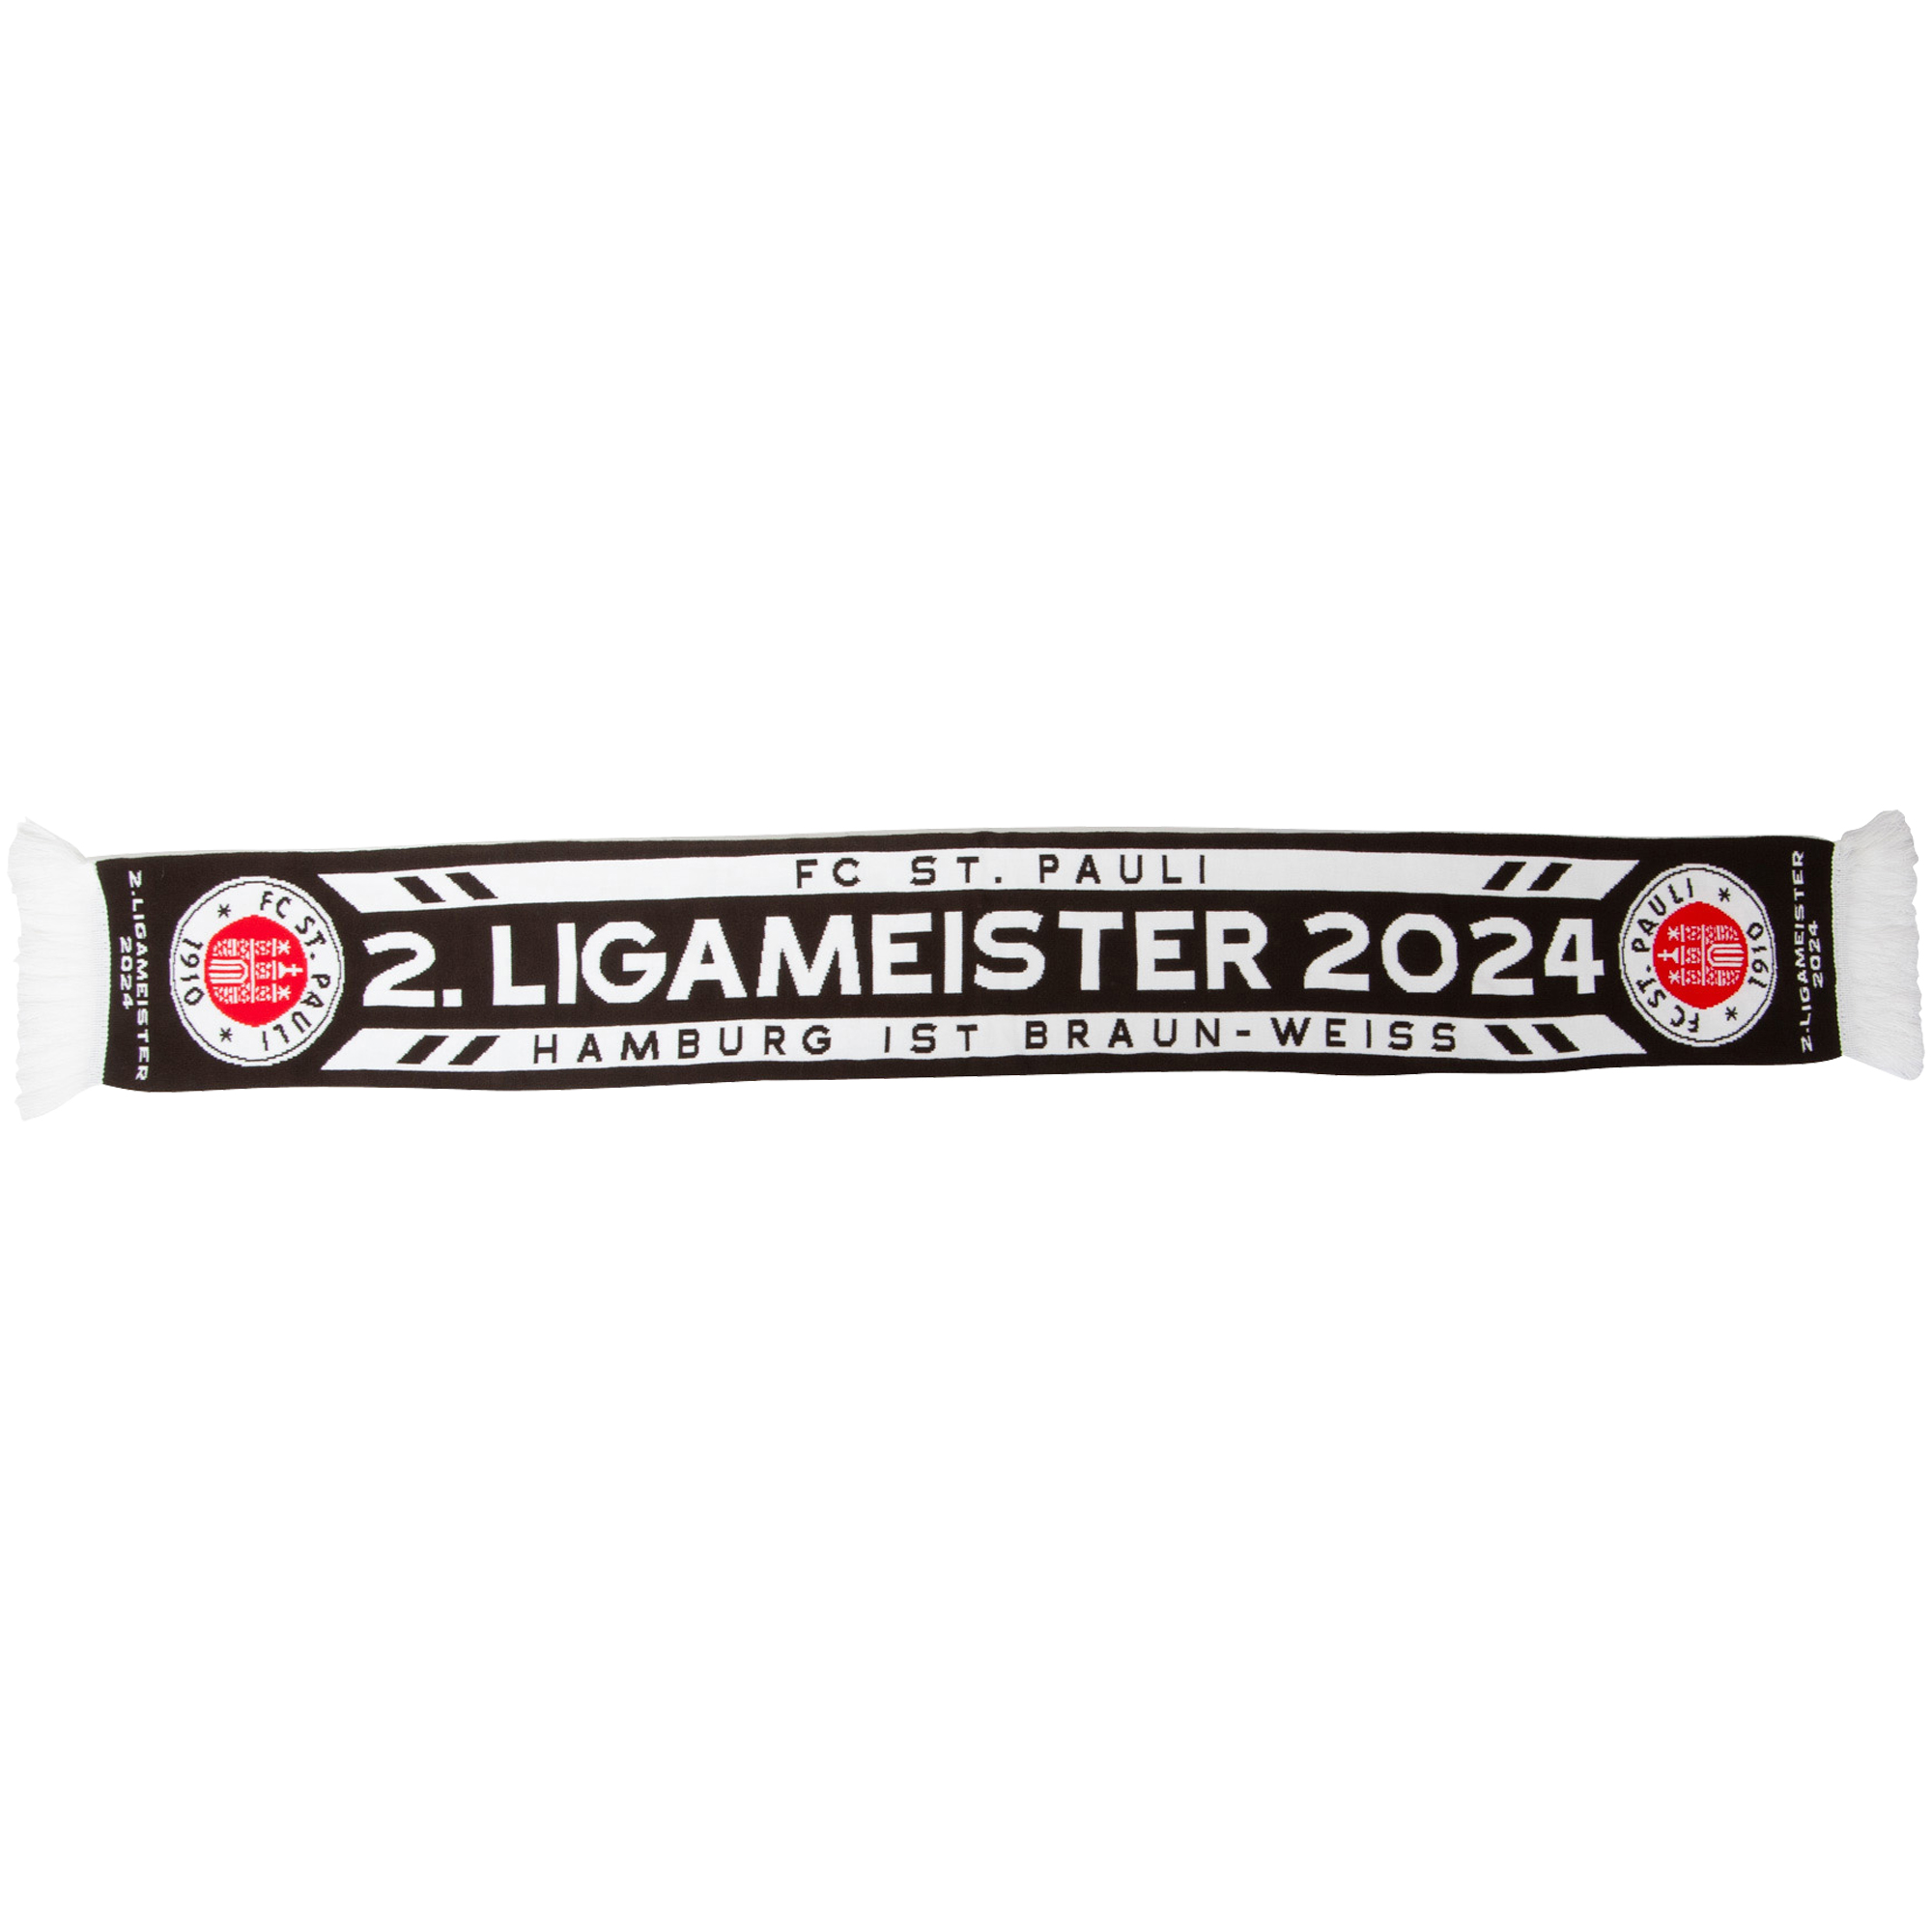 FC St. Pauli - Schal 2. Ligameister 2024 - braun/weiß